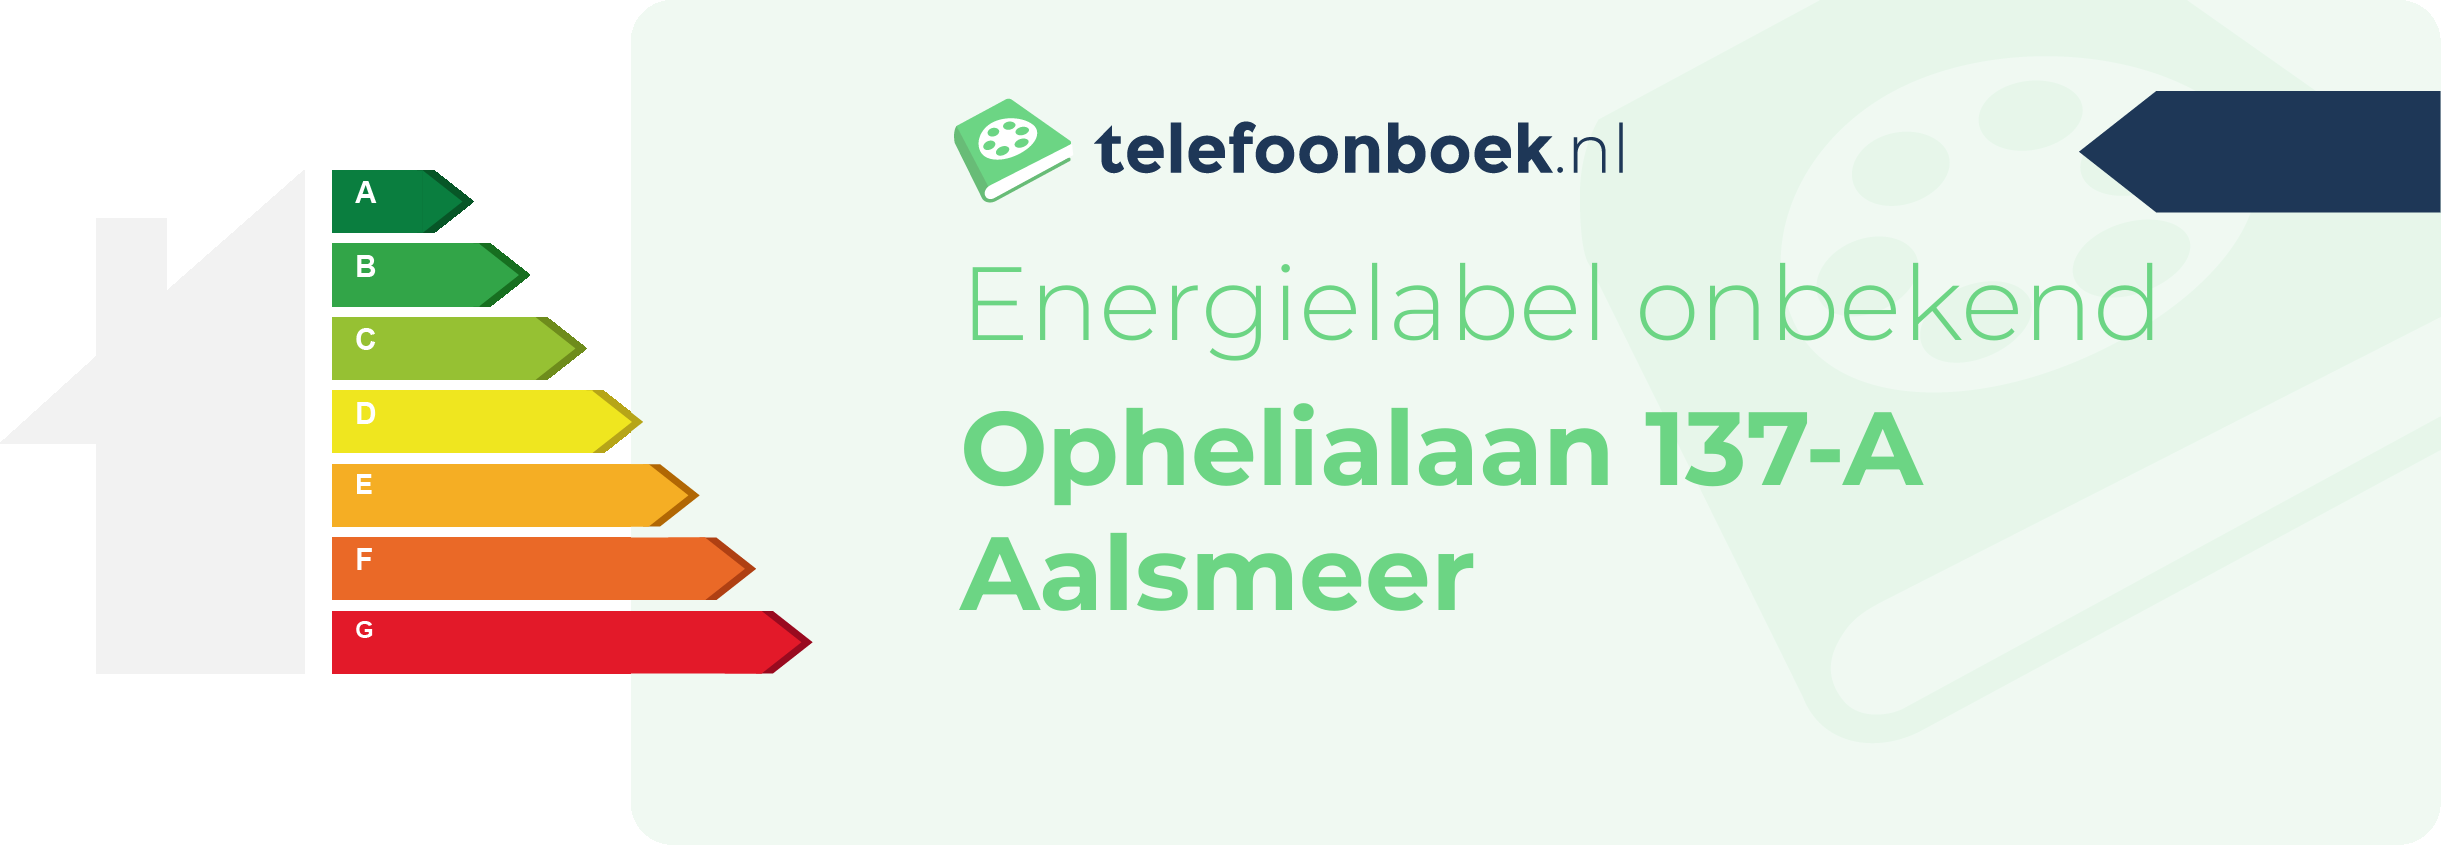 Energielabel Ophelialaan 137-A Aalsmeer